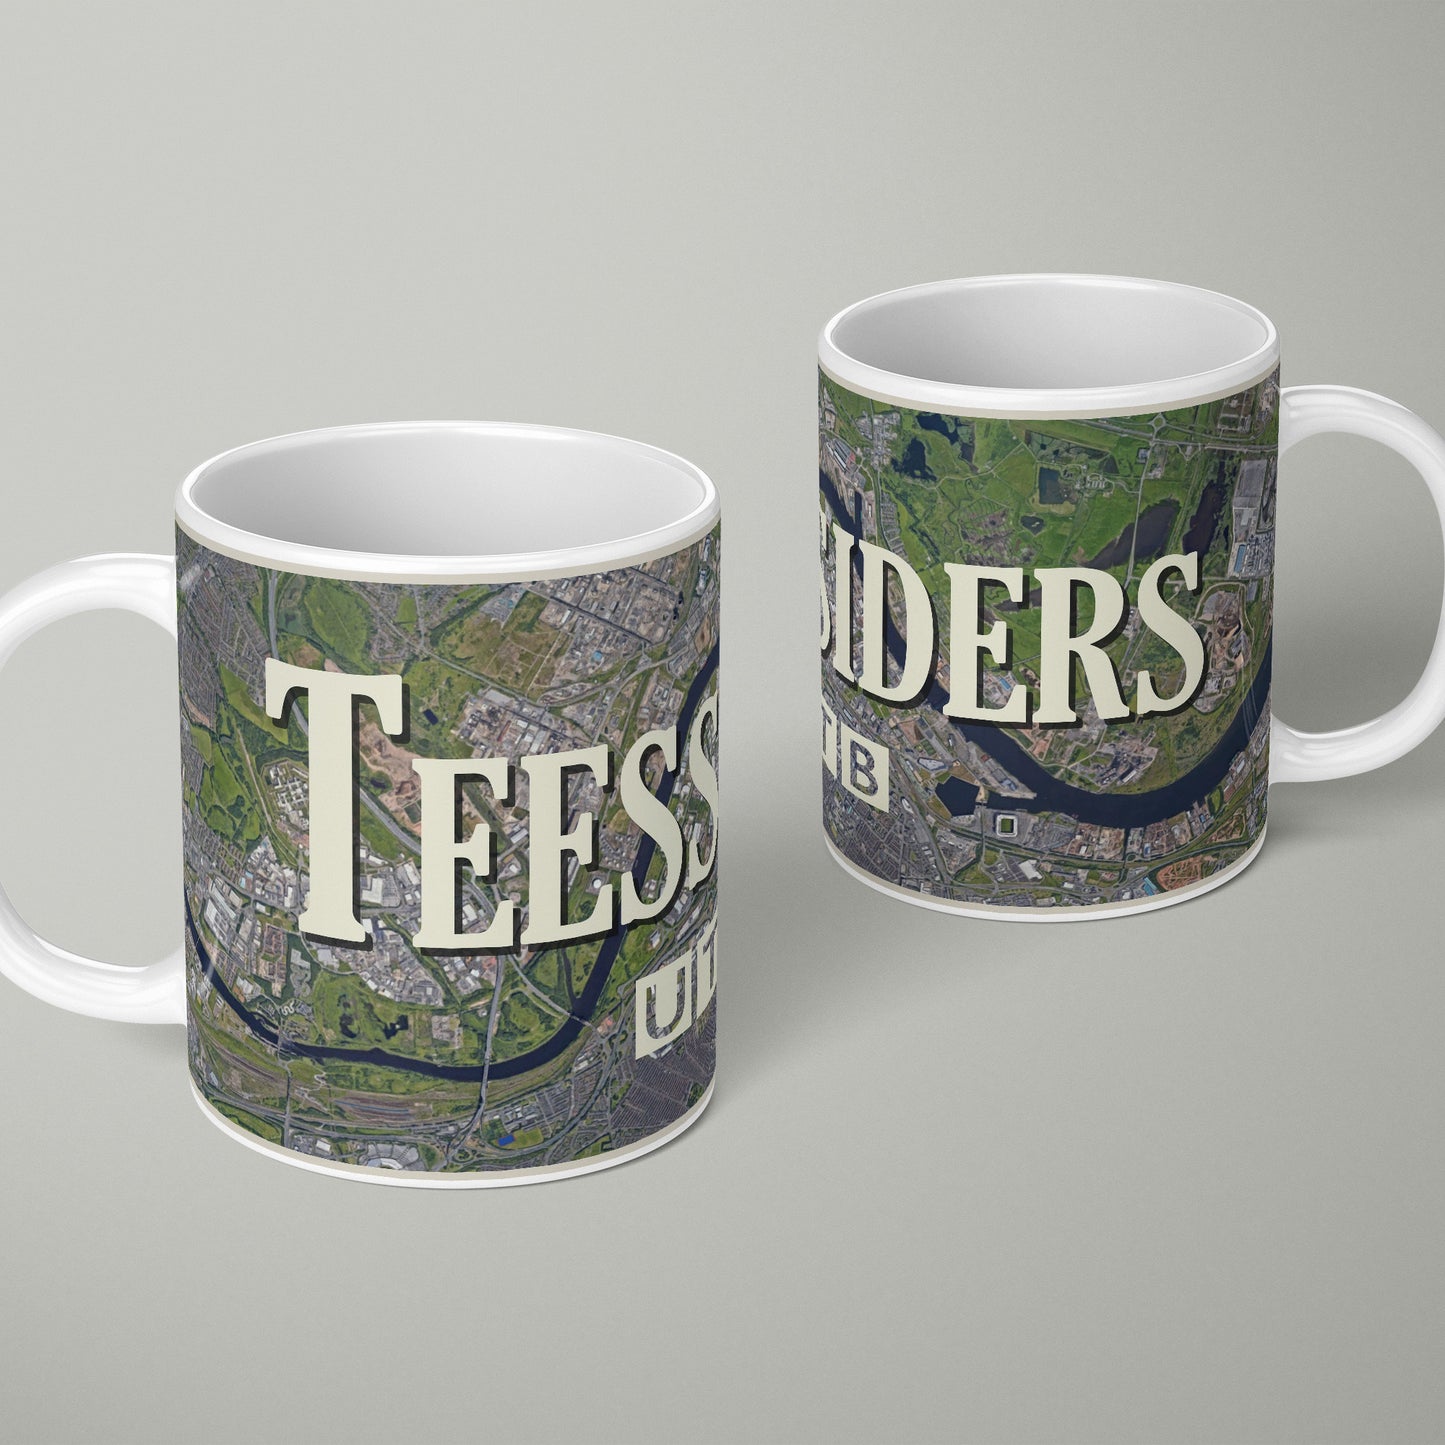 Teessiders / Eastenders Ceramic Mug